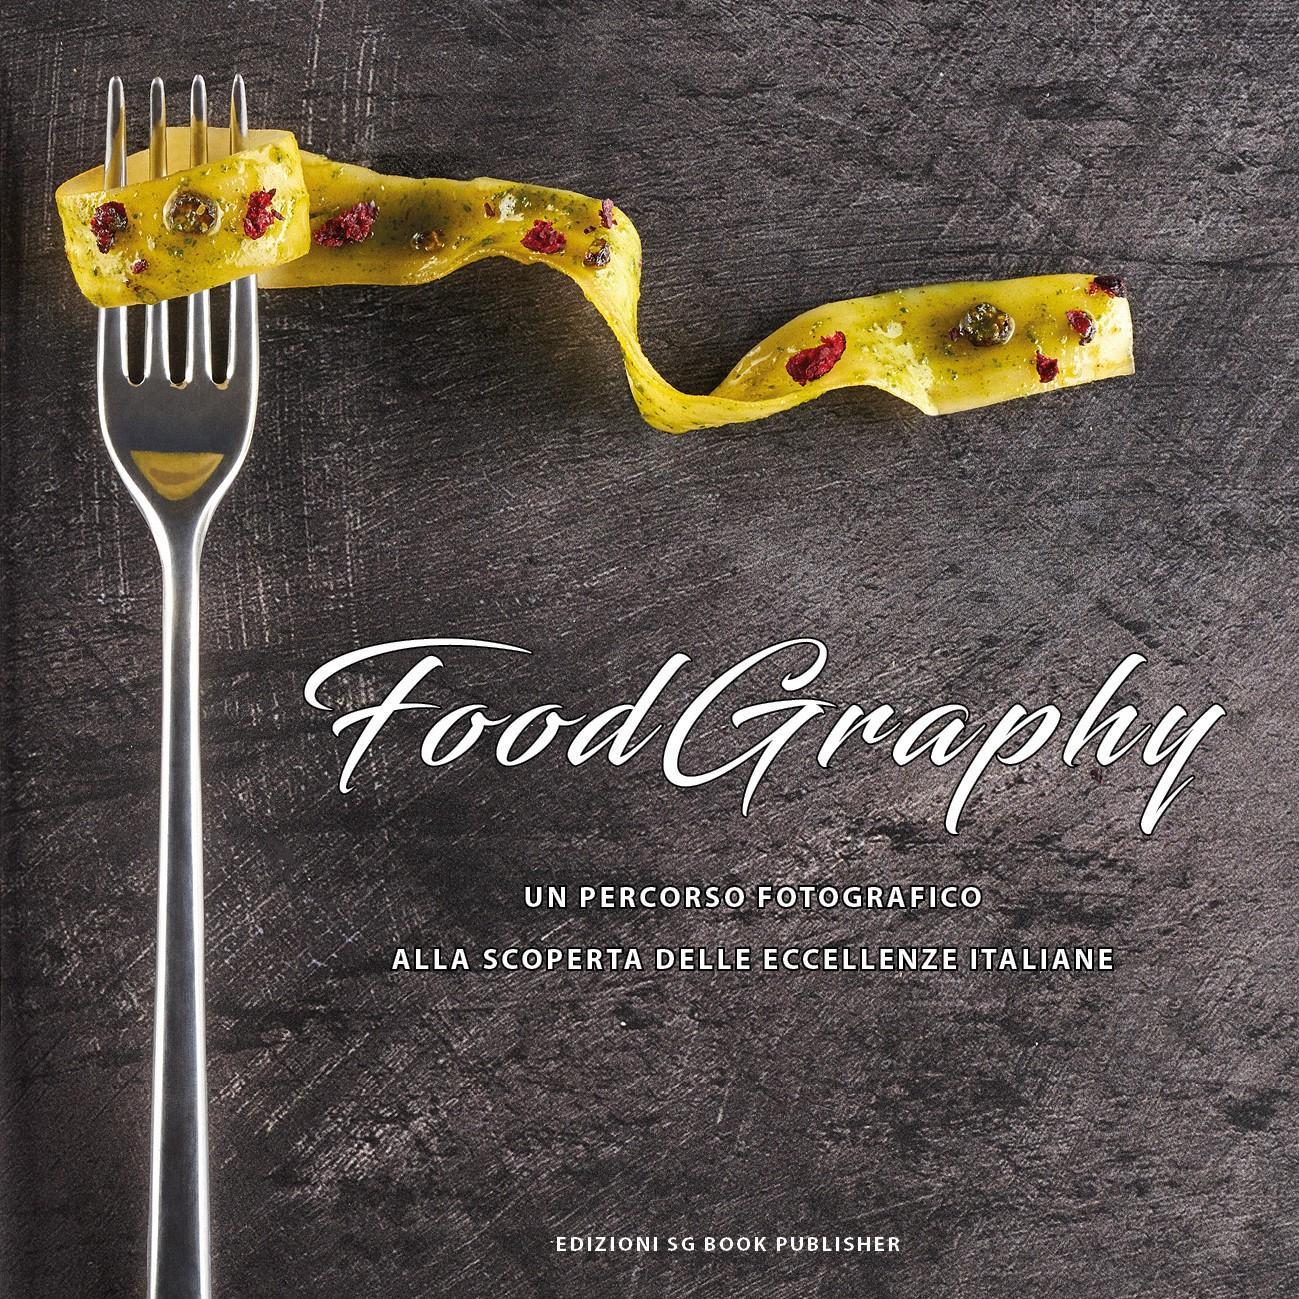 Food.Graphy: Un percorso fotografico alla scoperta delle eccellenze italiane - Limited Edition